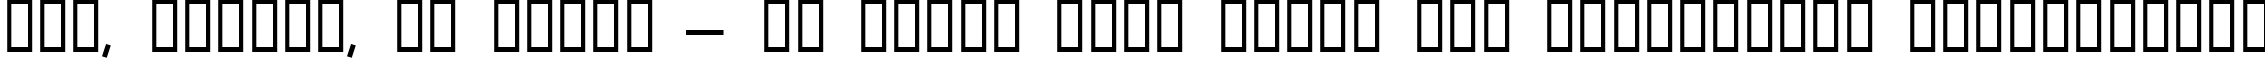 Пример написания шрифтом Klondike текста на украинском